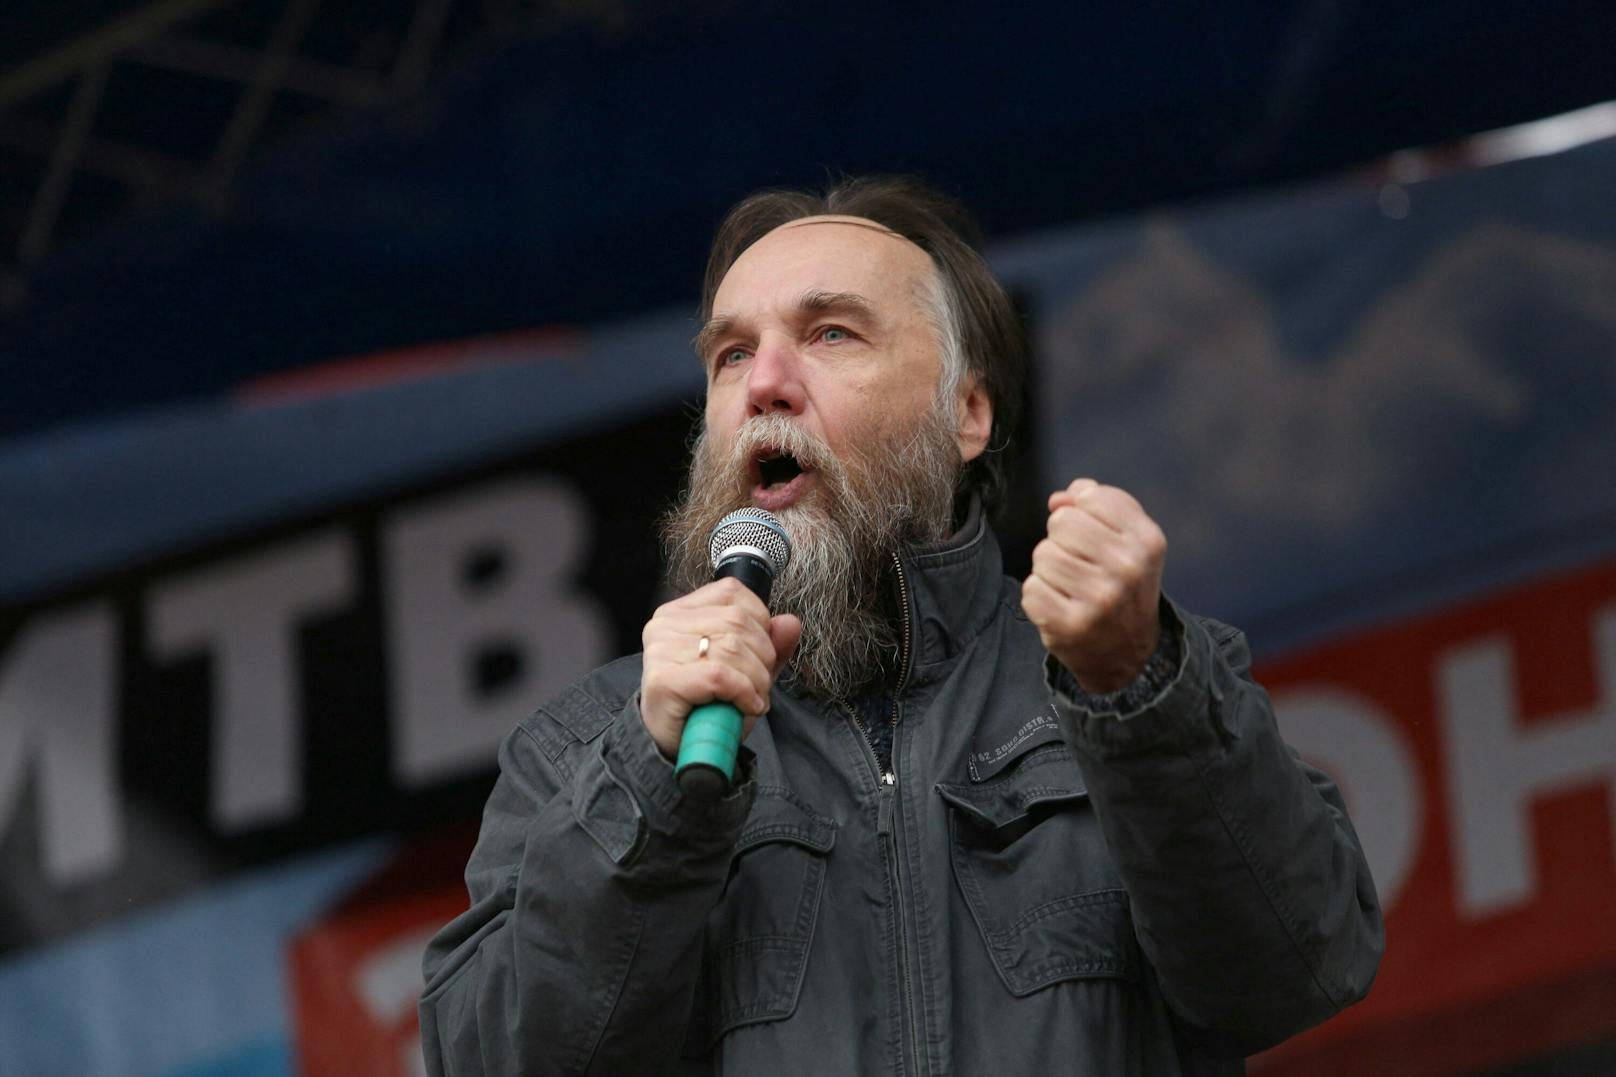 Der russische Politologe Alexander Dugin gestikuliert bei seiner Rede auf der Kundgebung "Kampf um den Donbass" zur Unterstützung der selbsternannten Volksrepubliken Donezk und Luhansk in Moskau, Russland, 18. Oktober 2014.